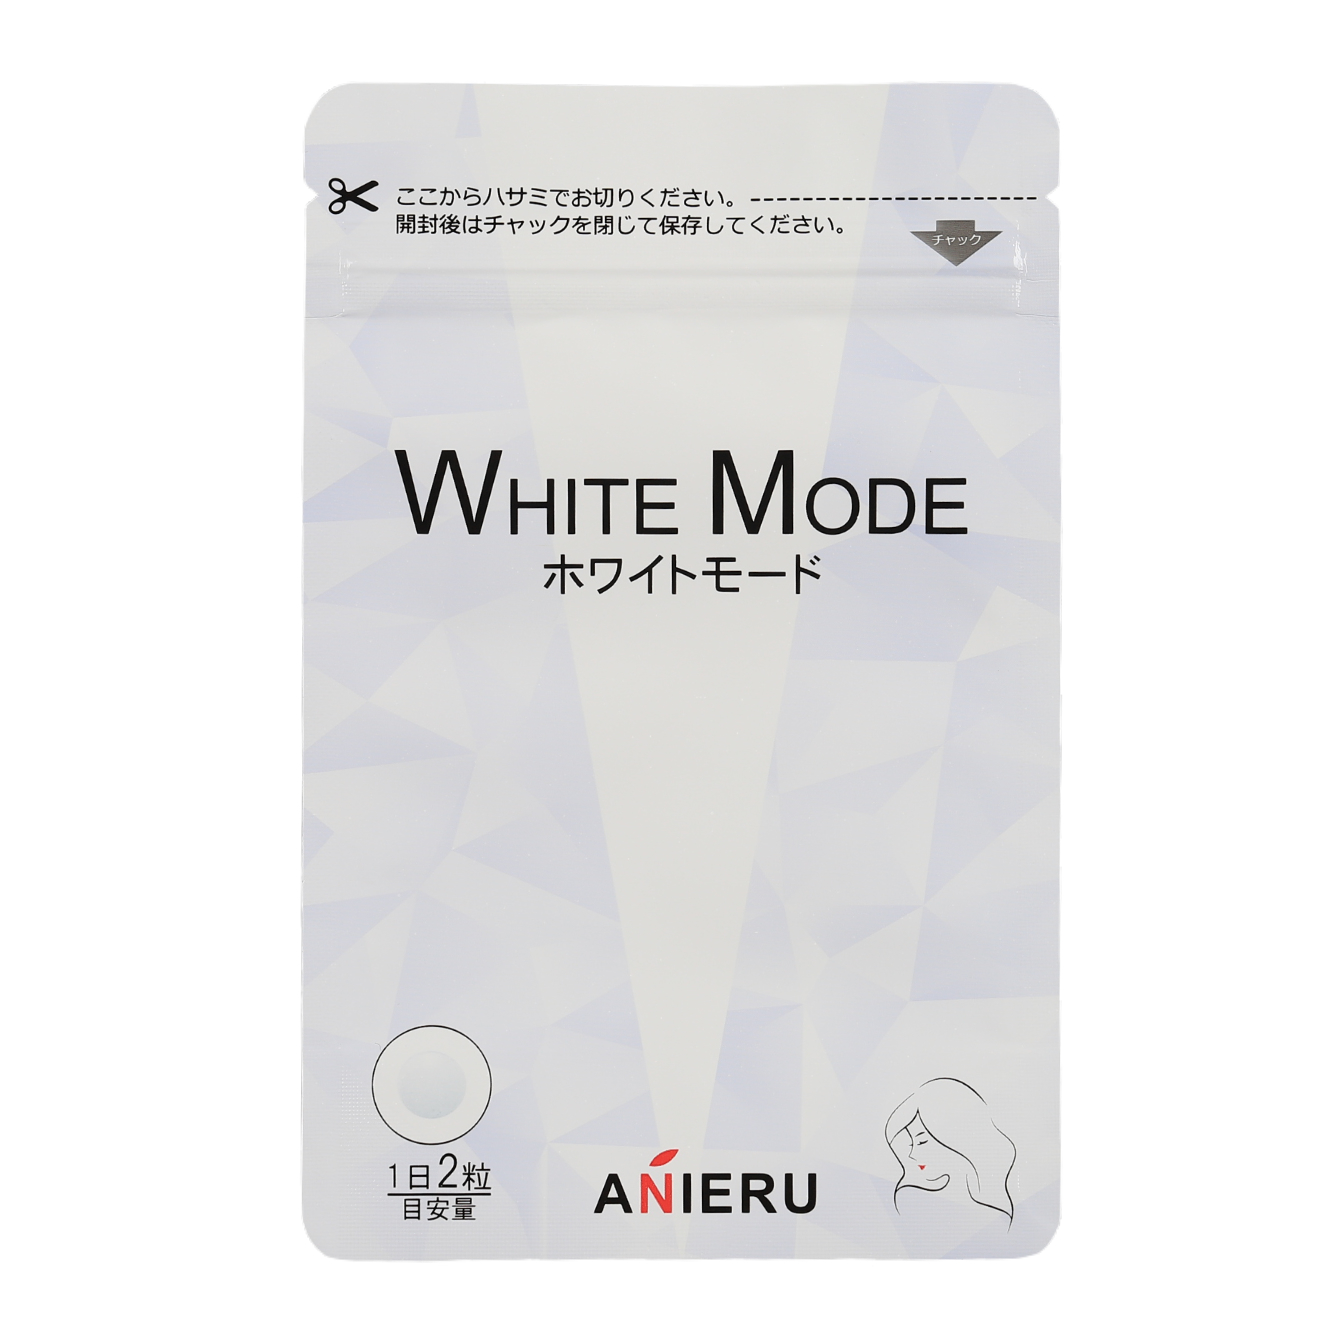 WHITE MODE